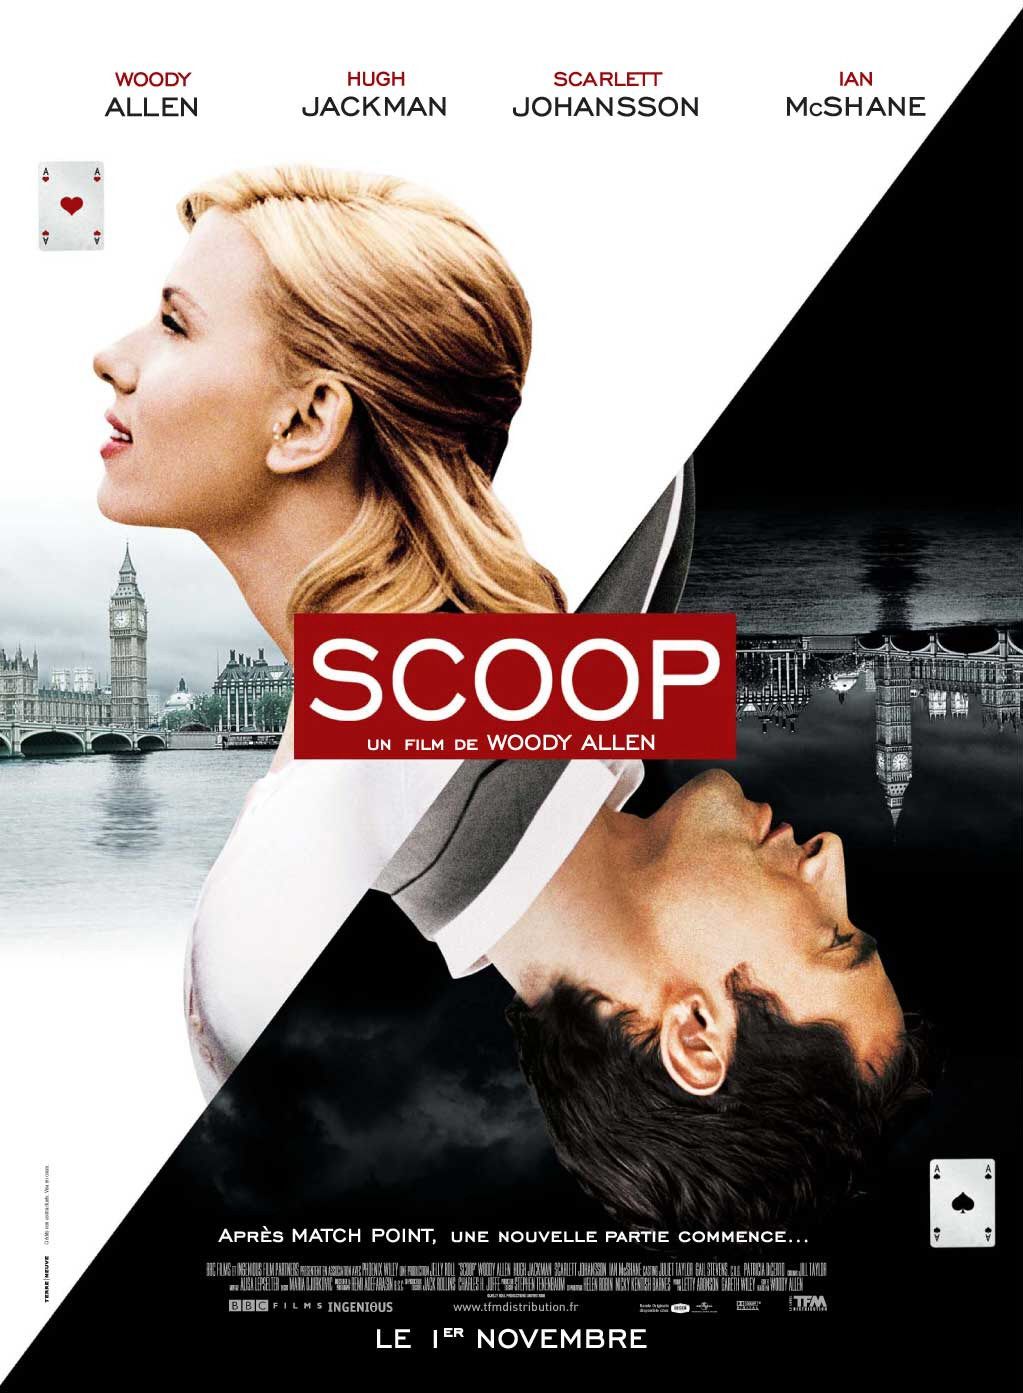 The Scoop movie